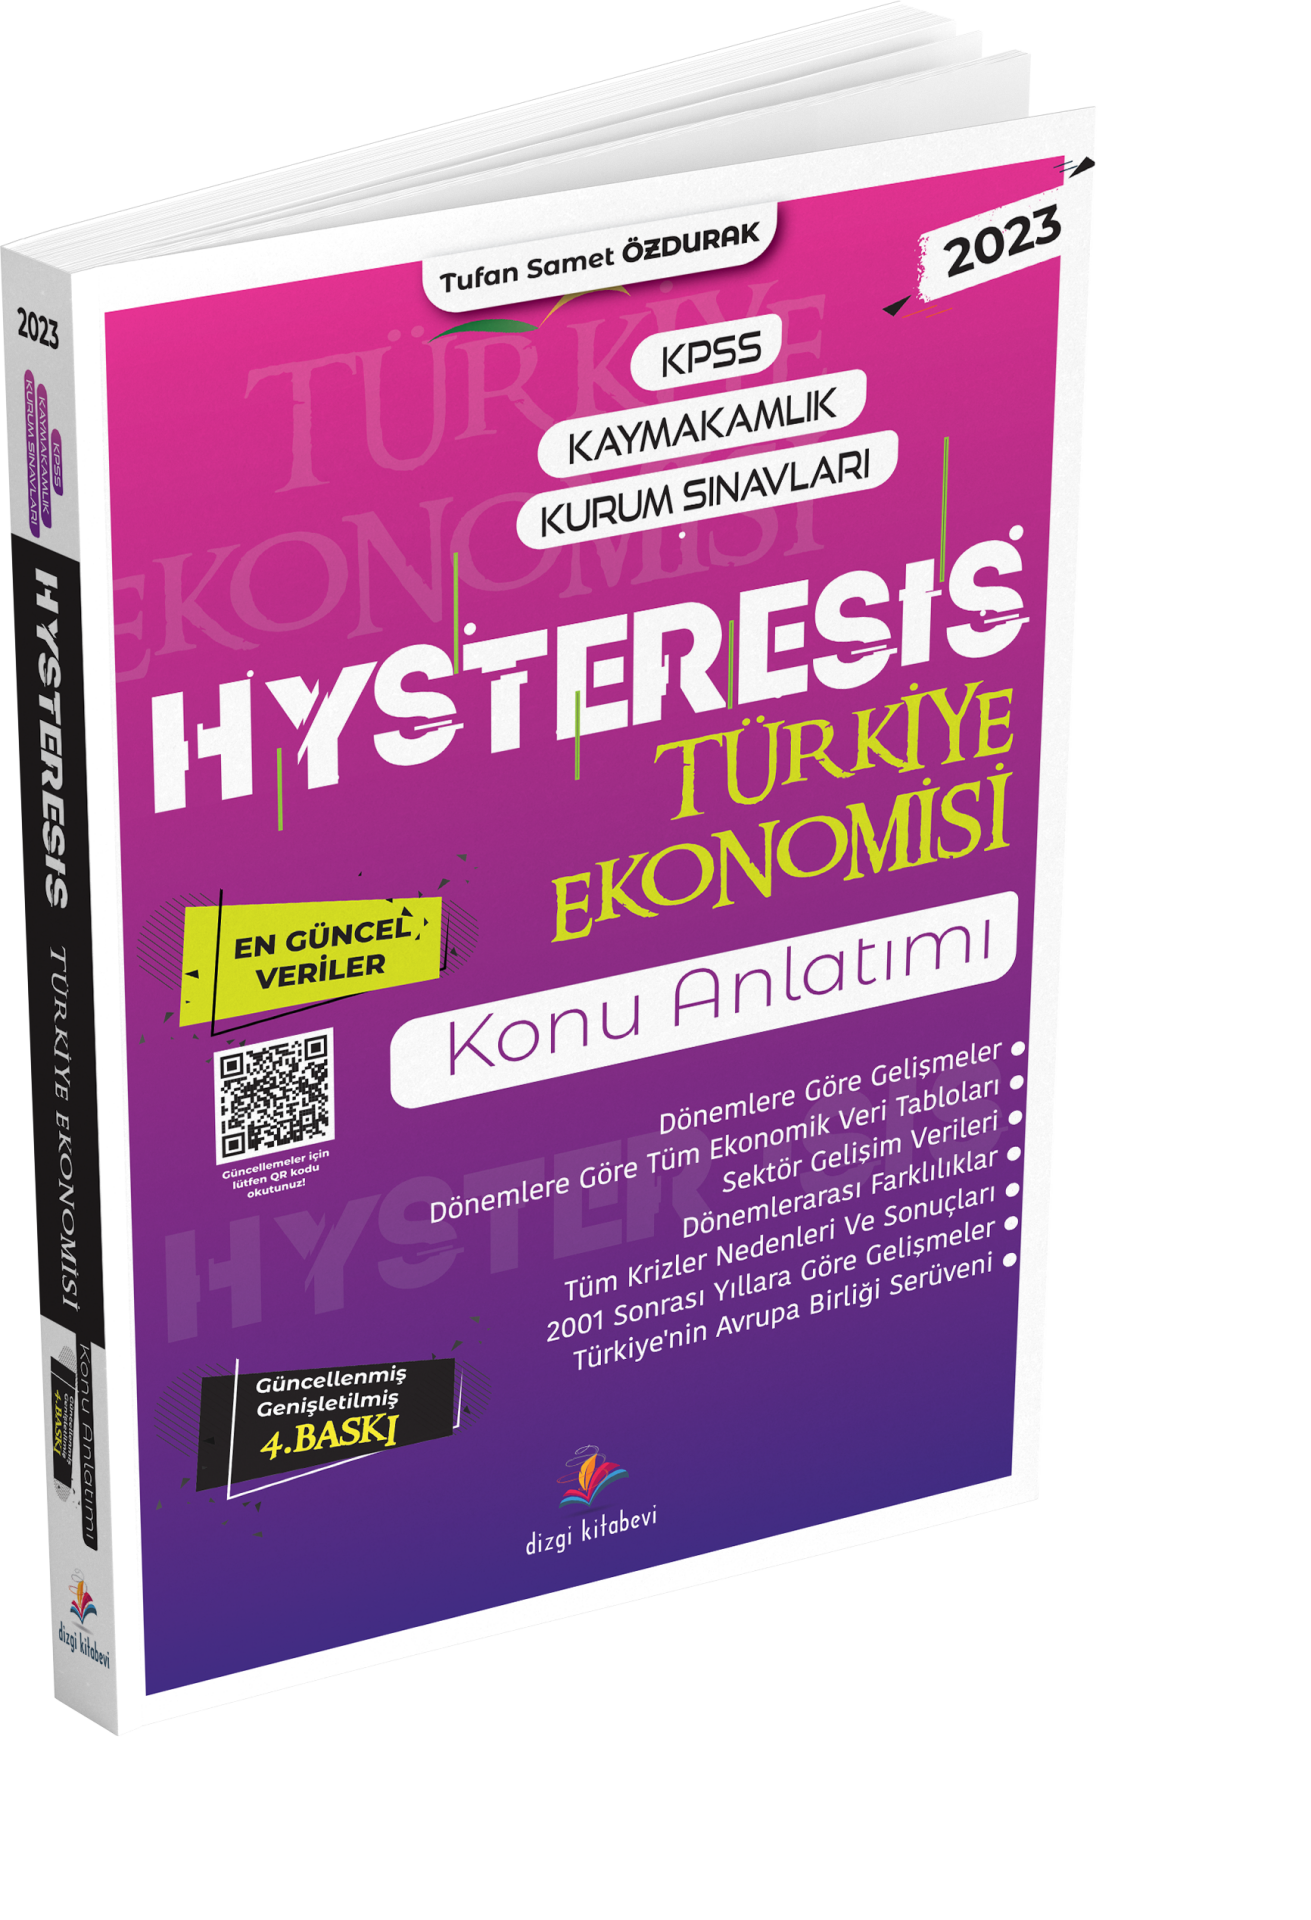 HYSTERESIS TÜRKİYE EKONOMİSİ KONU ANLATIMI GÜNCELLENMİŞ GENİŞLETİLMİŞ 4.BASKI